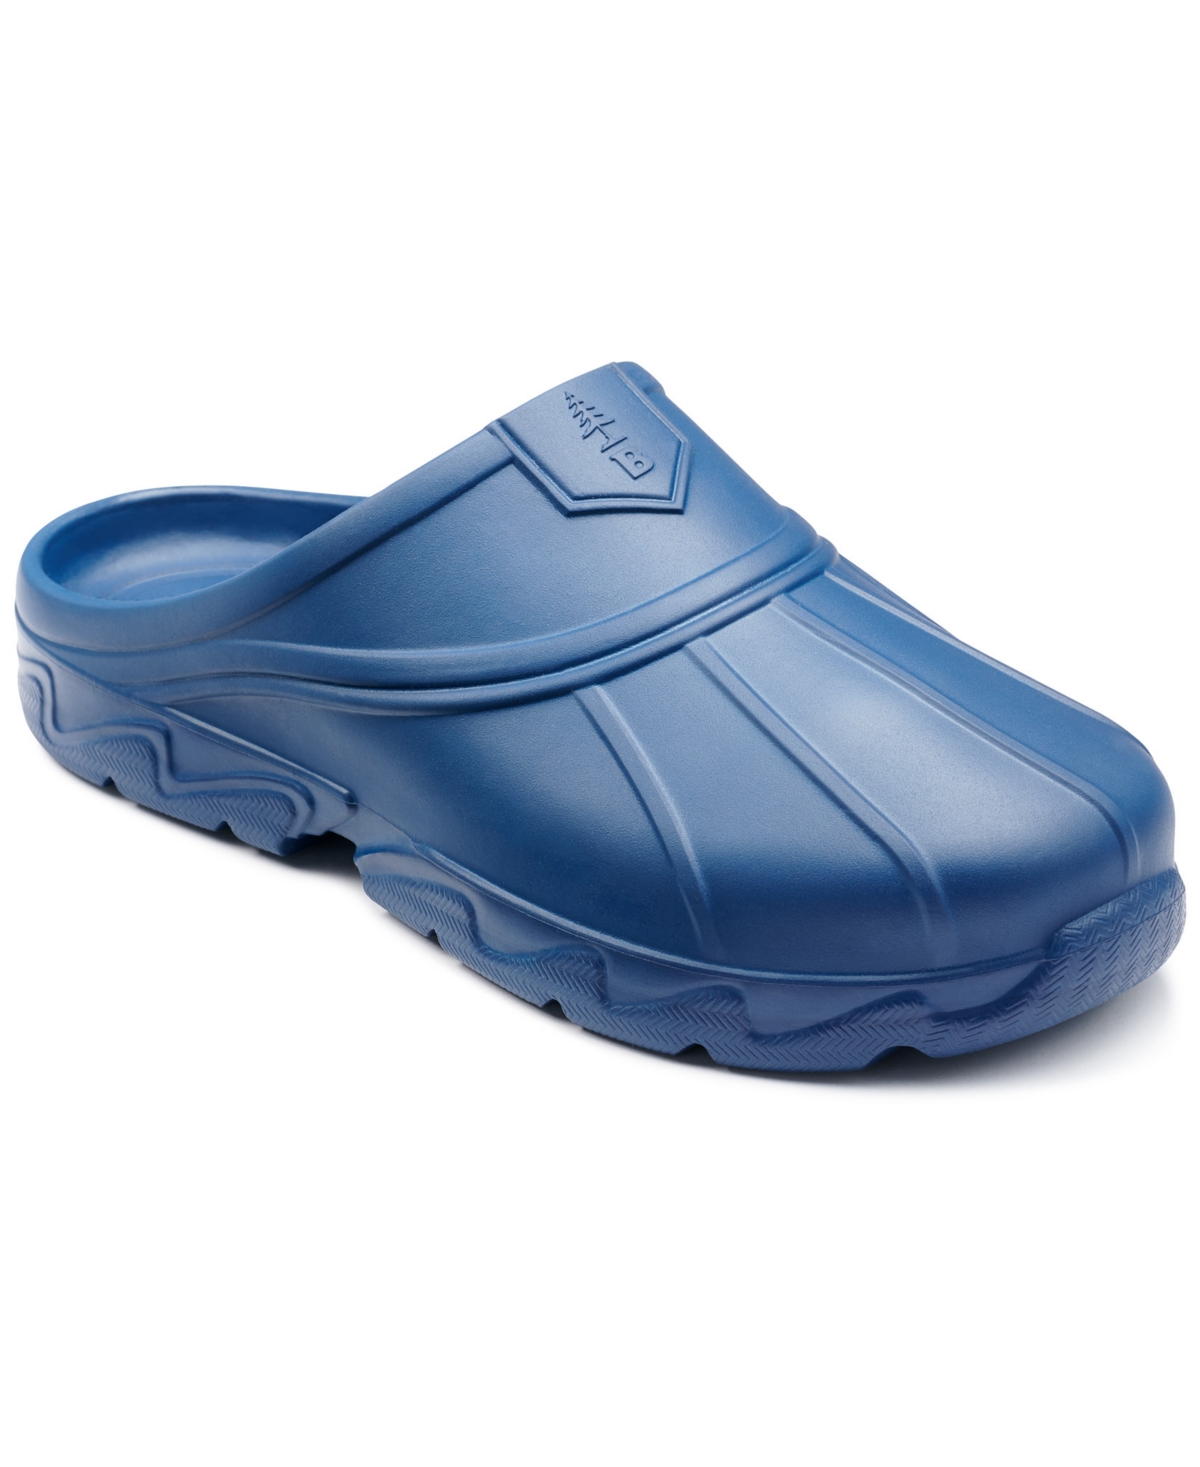 Men's Field Slide Sandals - Ensign Blue